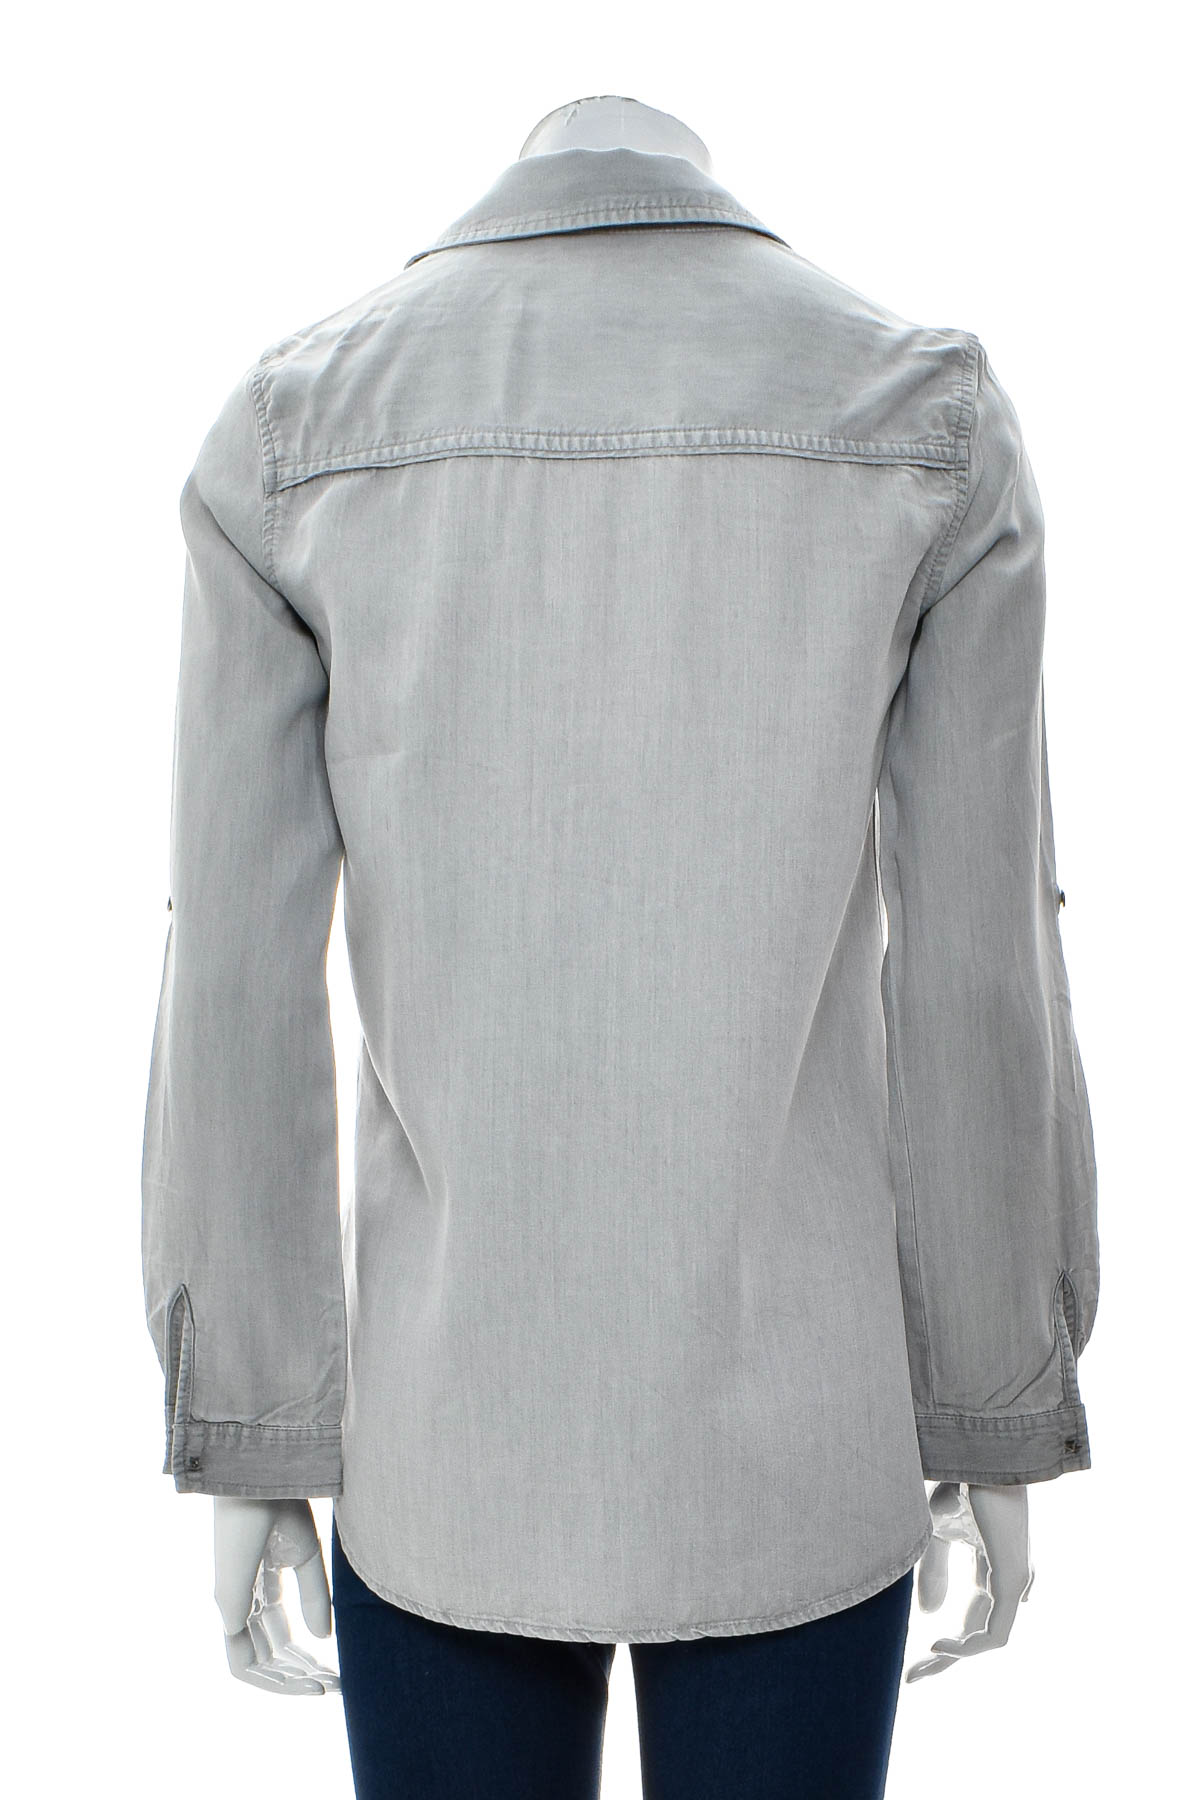 Γυναικείо πουκάμισο - ZARA Basic - 1